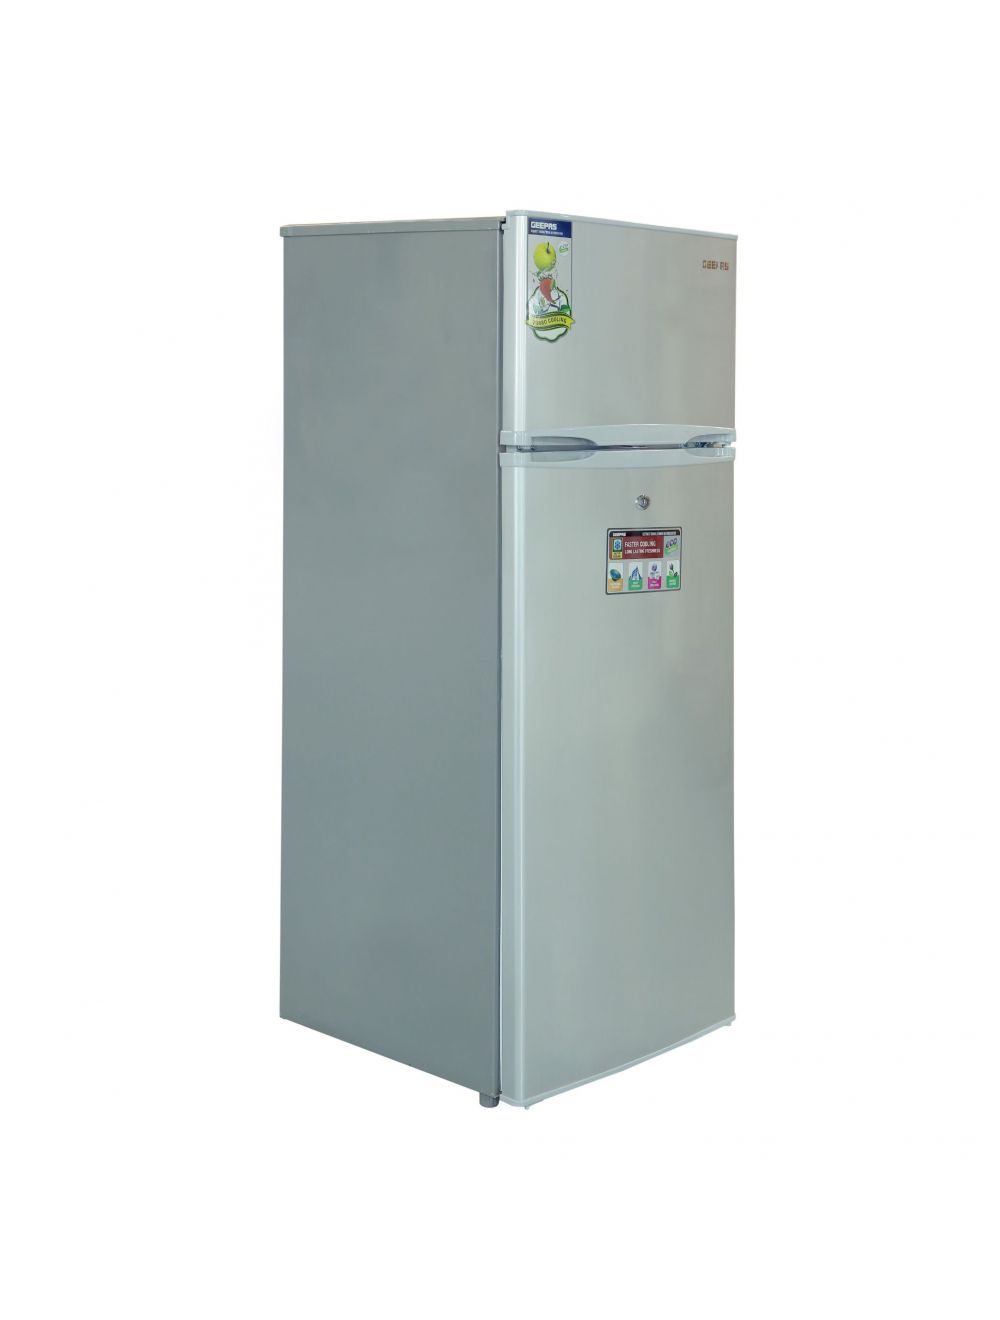 Geepas 240 L Defrost Double Door Refrigerator /VcmMetal1x1